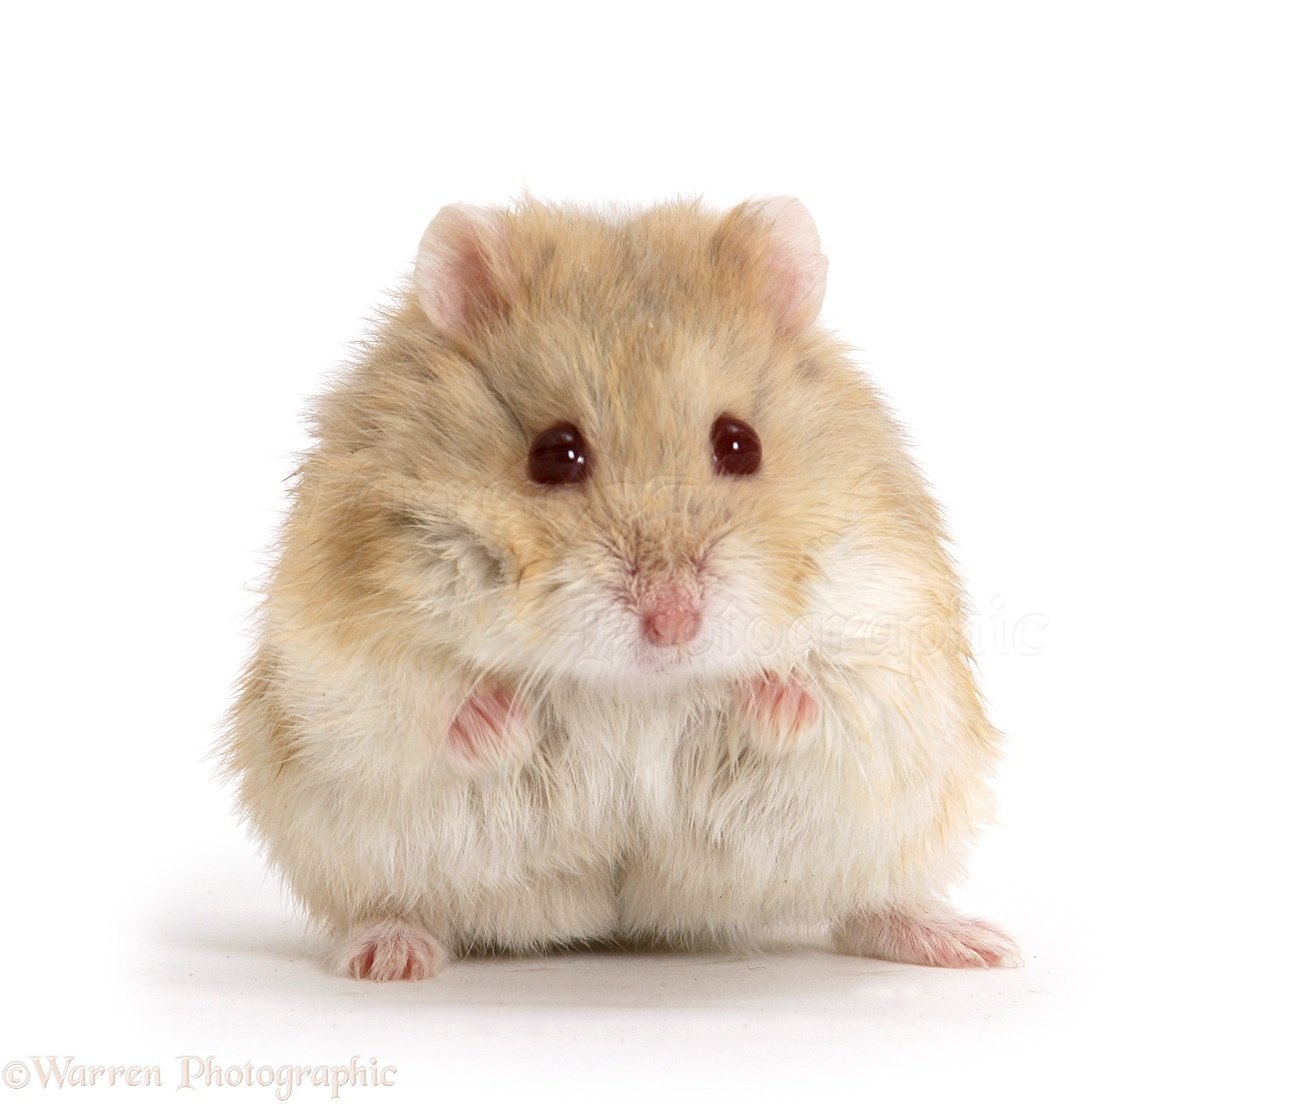 Sad hamster violin hamster. Хомяк джунгарский. Хомяк породы джунгарик. Сирийский хомяк и джунгарик. Карликовый хомяк джунгарский.